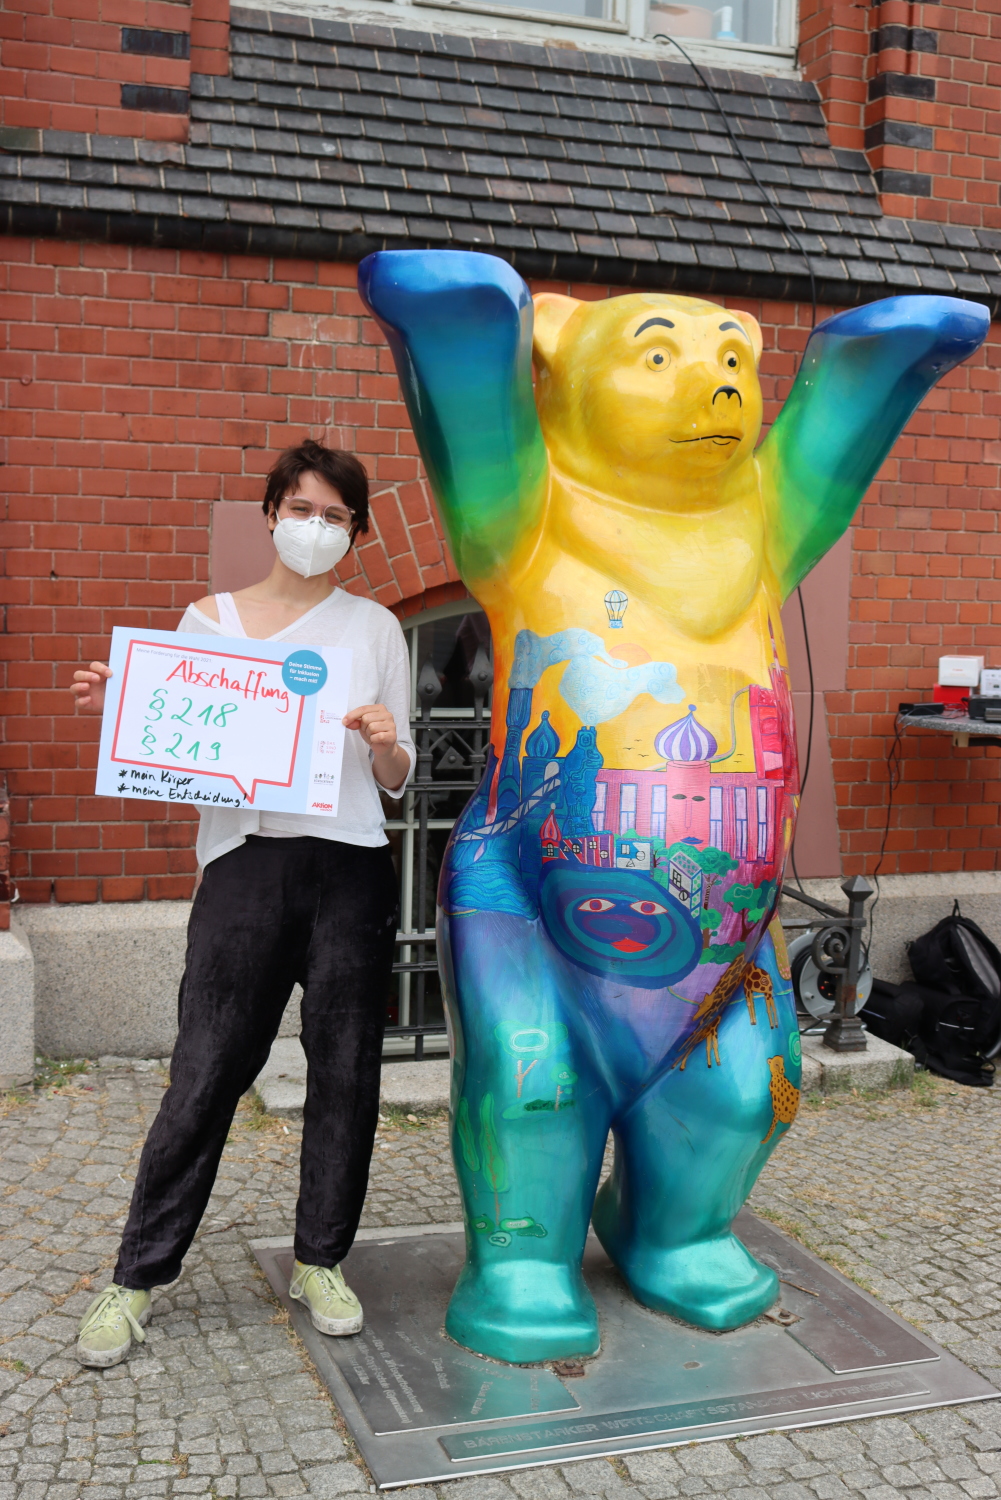 Eine weitere Besucherin des Aktionstag Lichtenberg fordert: "Abschaffung §218, §219; mein Körper, meine Entscheidung". 